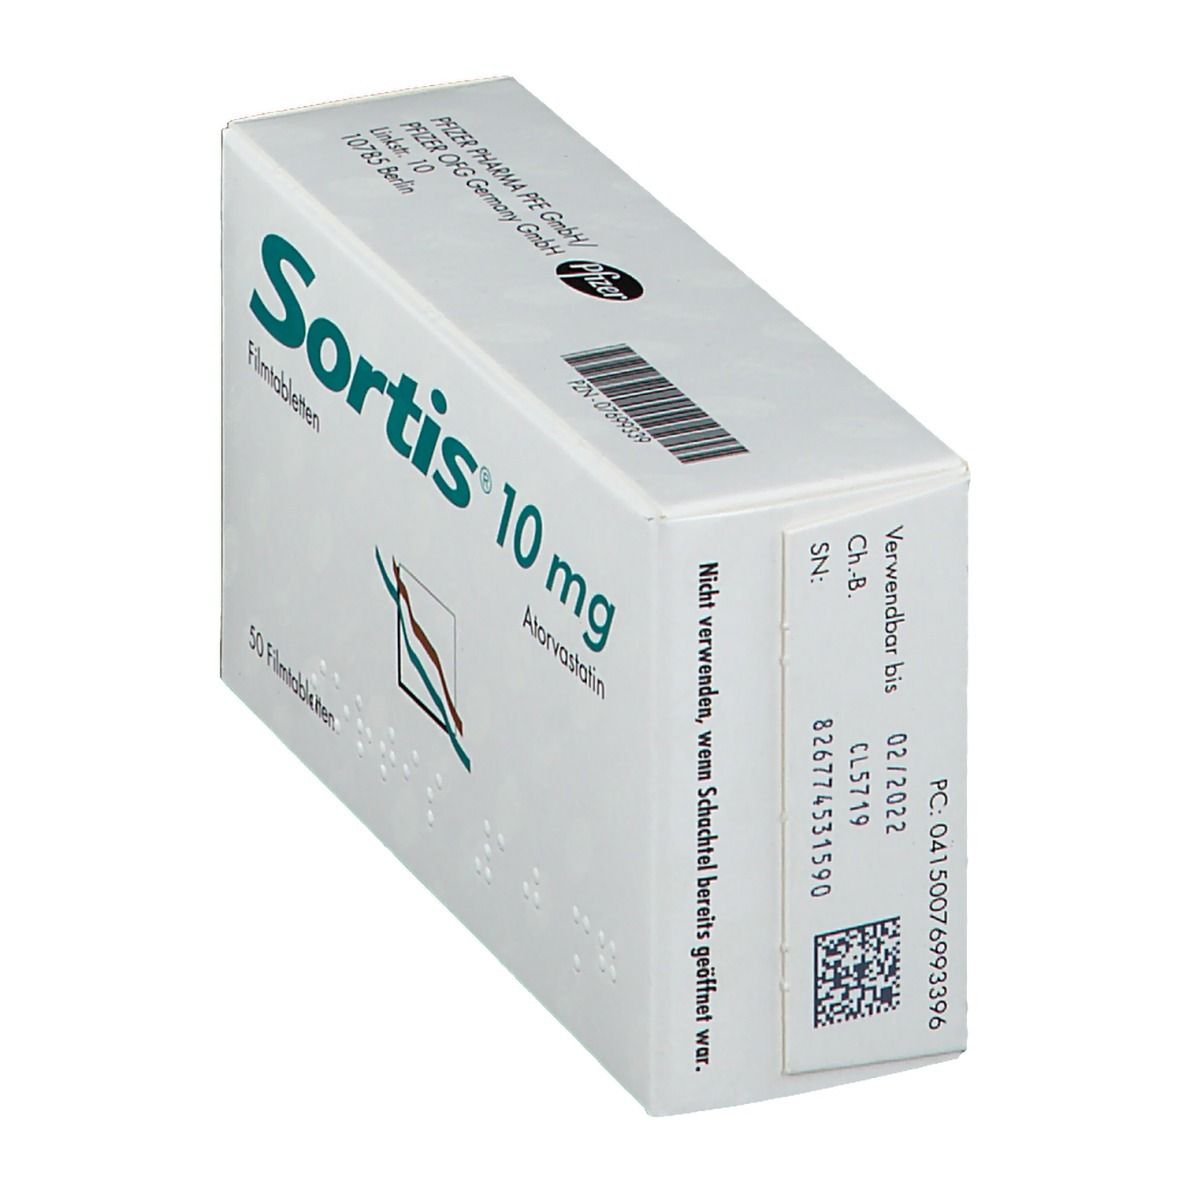 Sortis® 10 mg